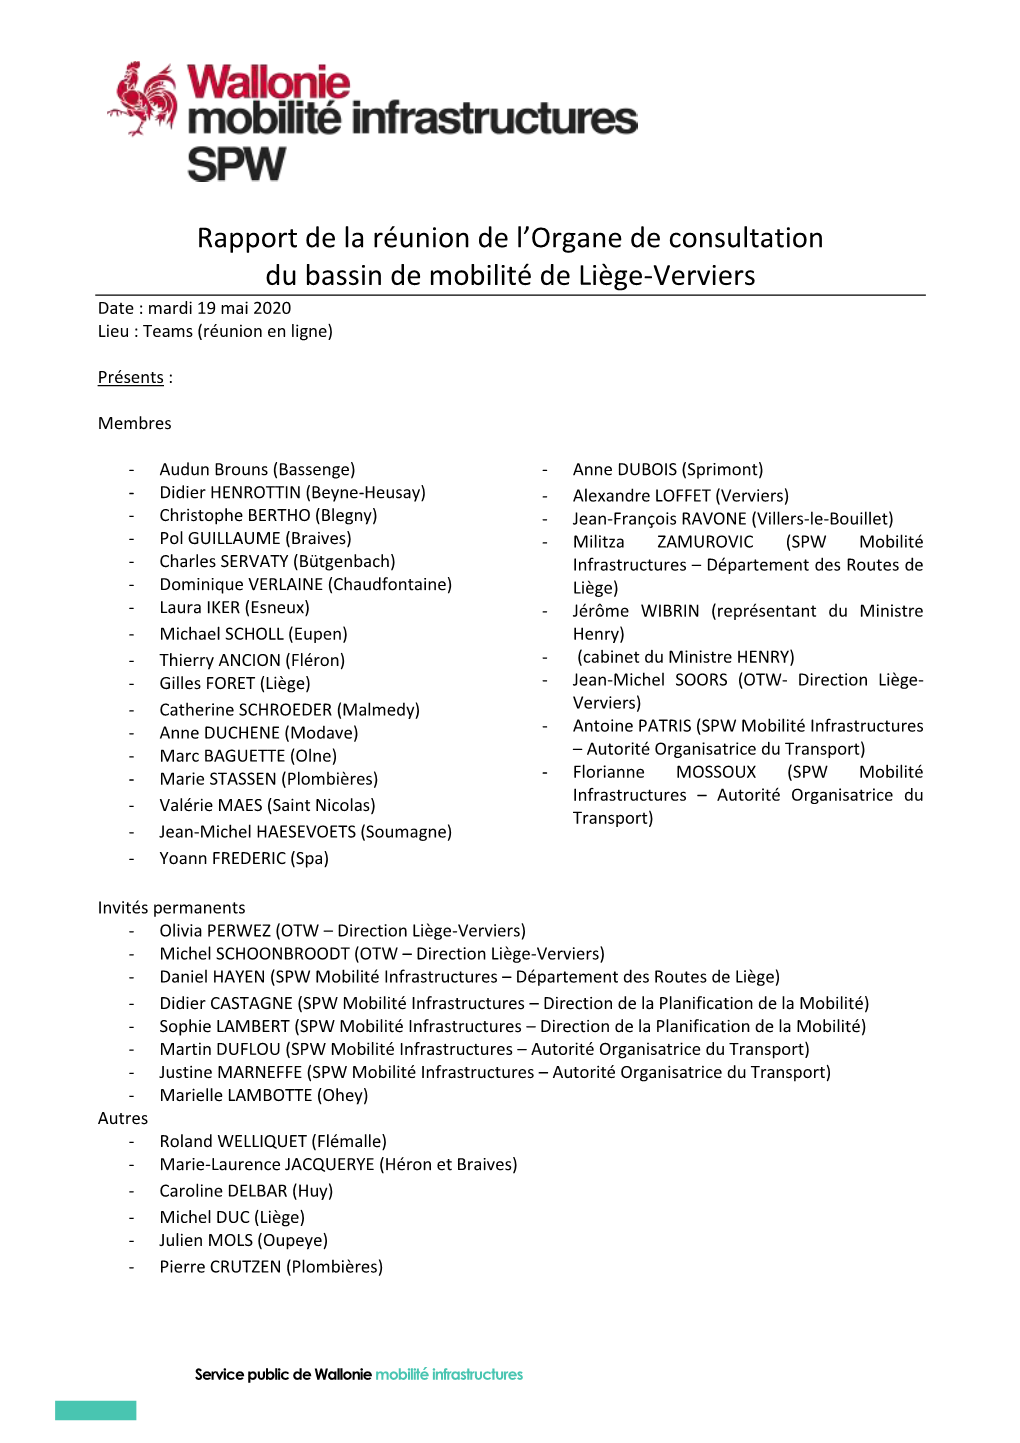 Rapport De La Réunion De L'organe De Consultation Du Bassin De Mobilité De Liège-Verviers